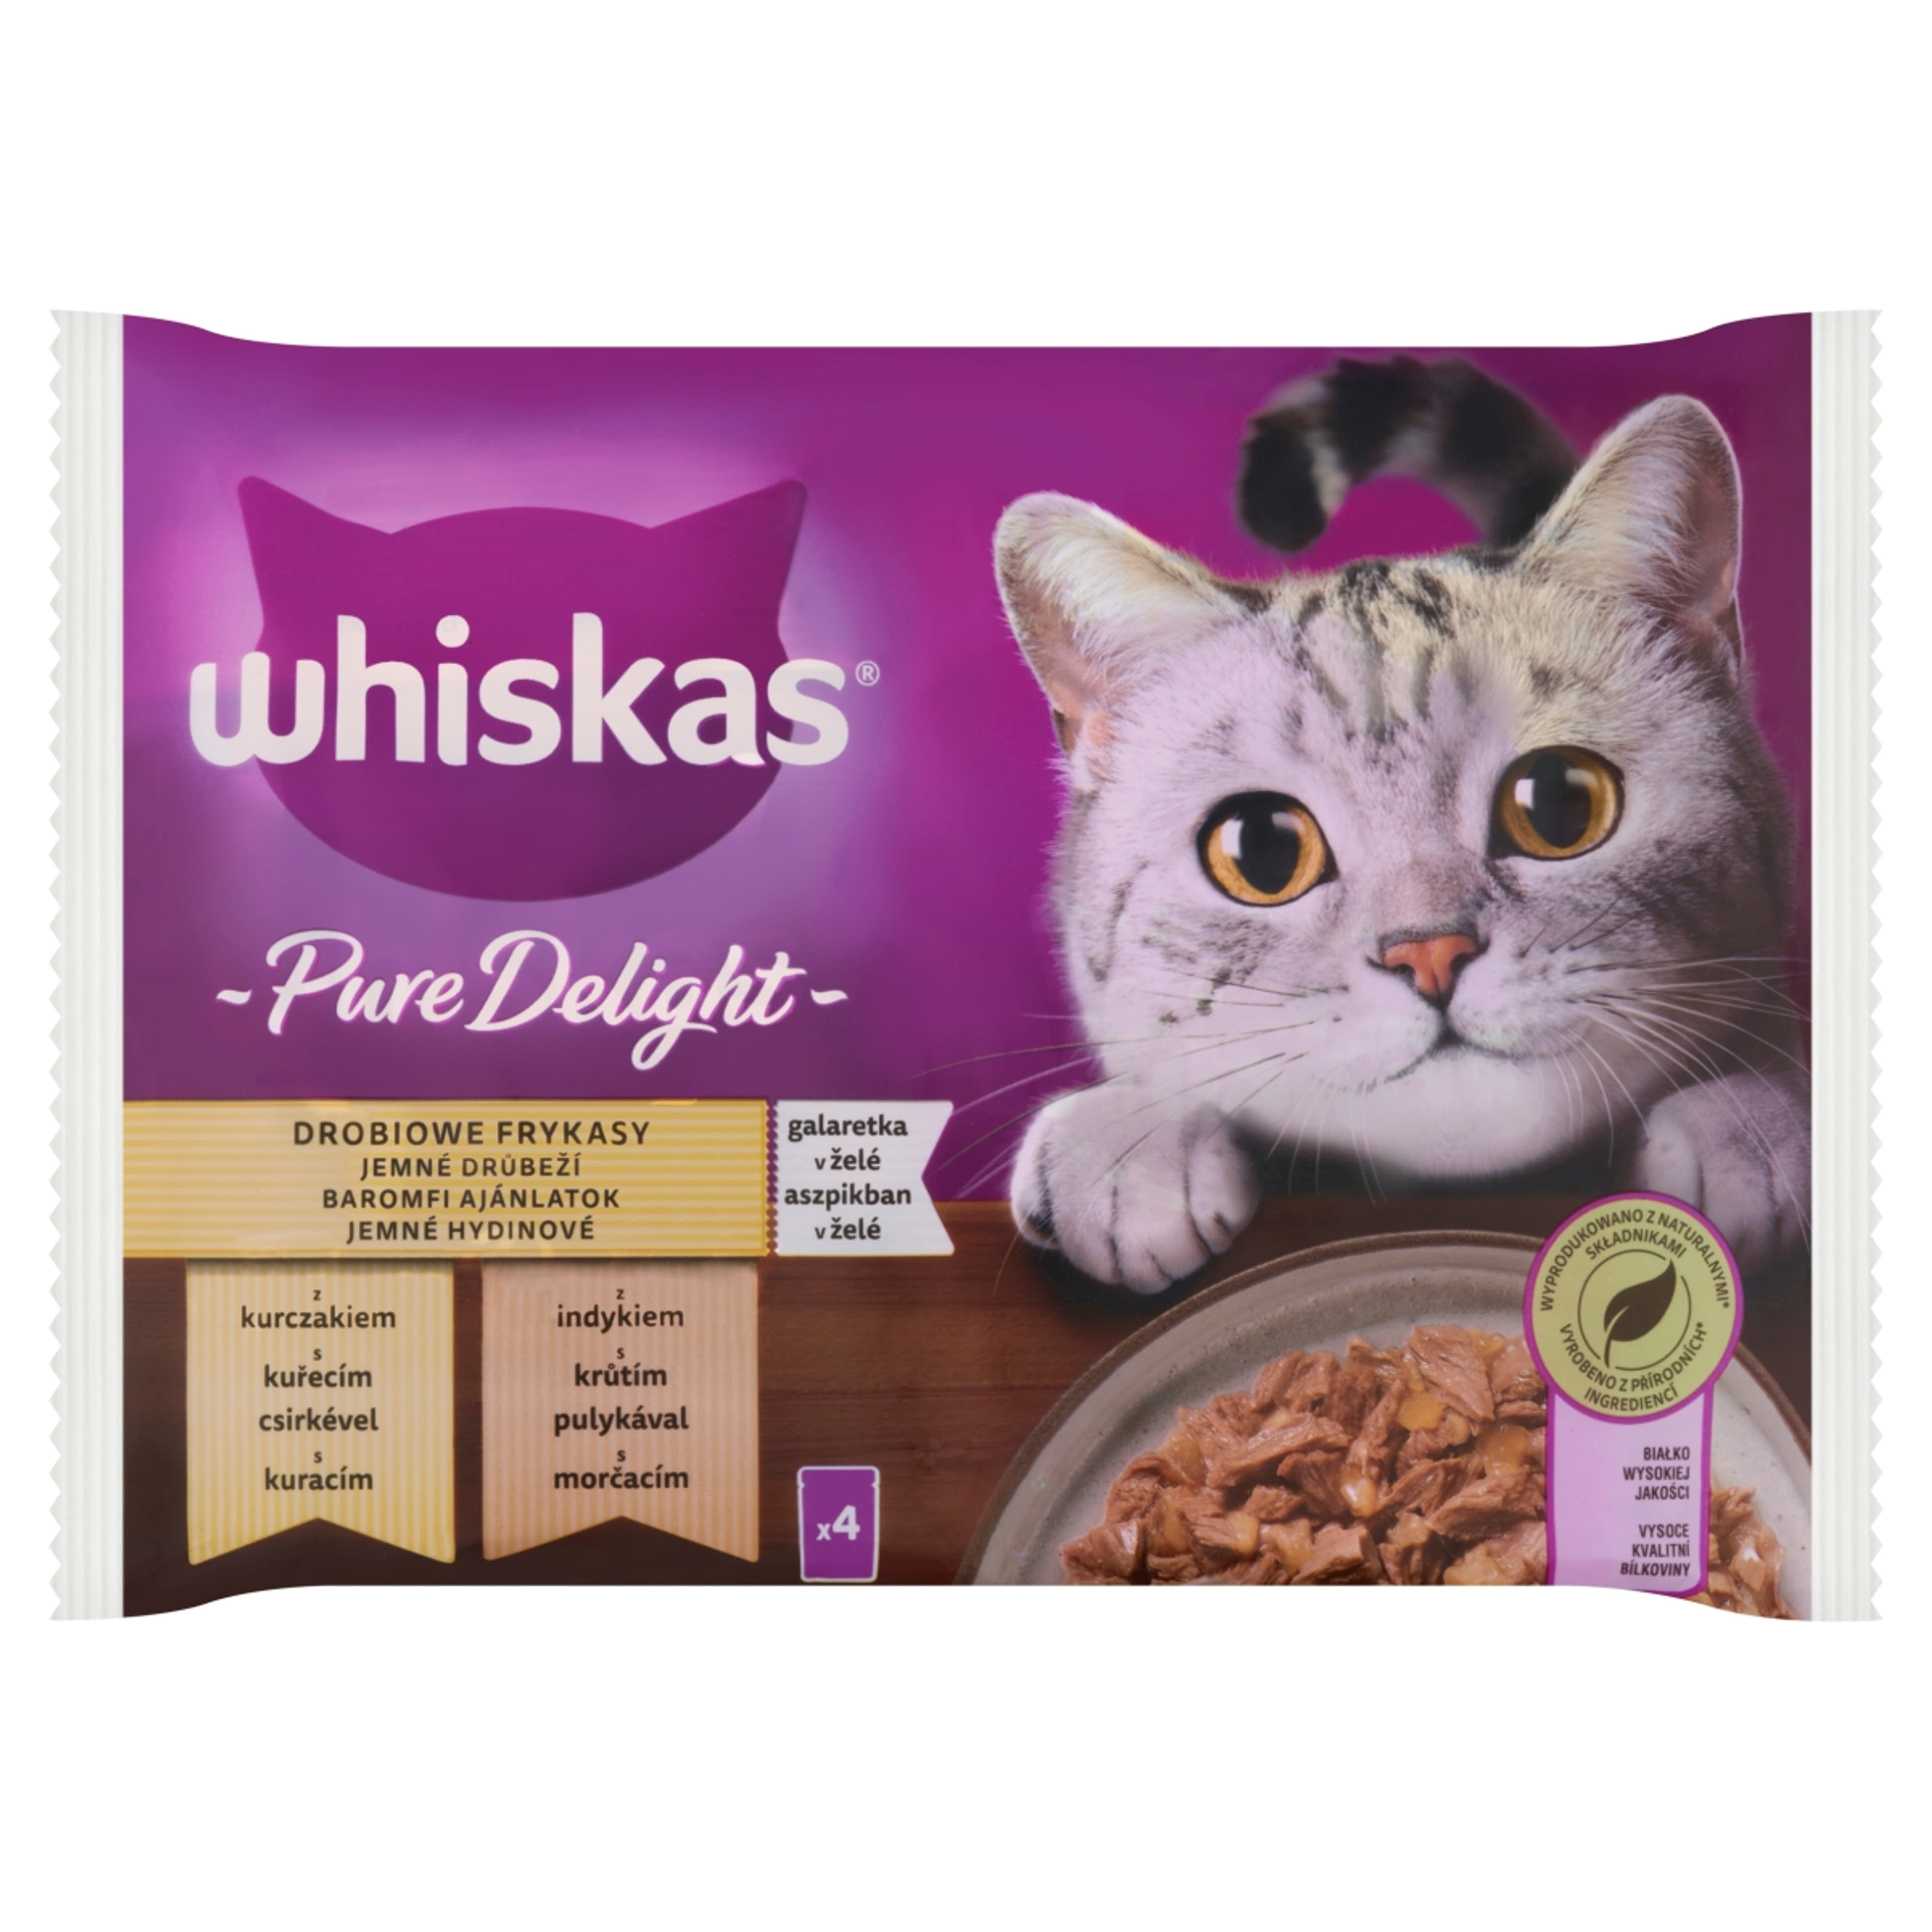 Whiskas Pure Delight alutasak felnőtt macskáknak 4 x 85 g - 340 g-1